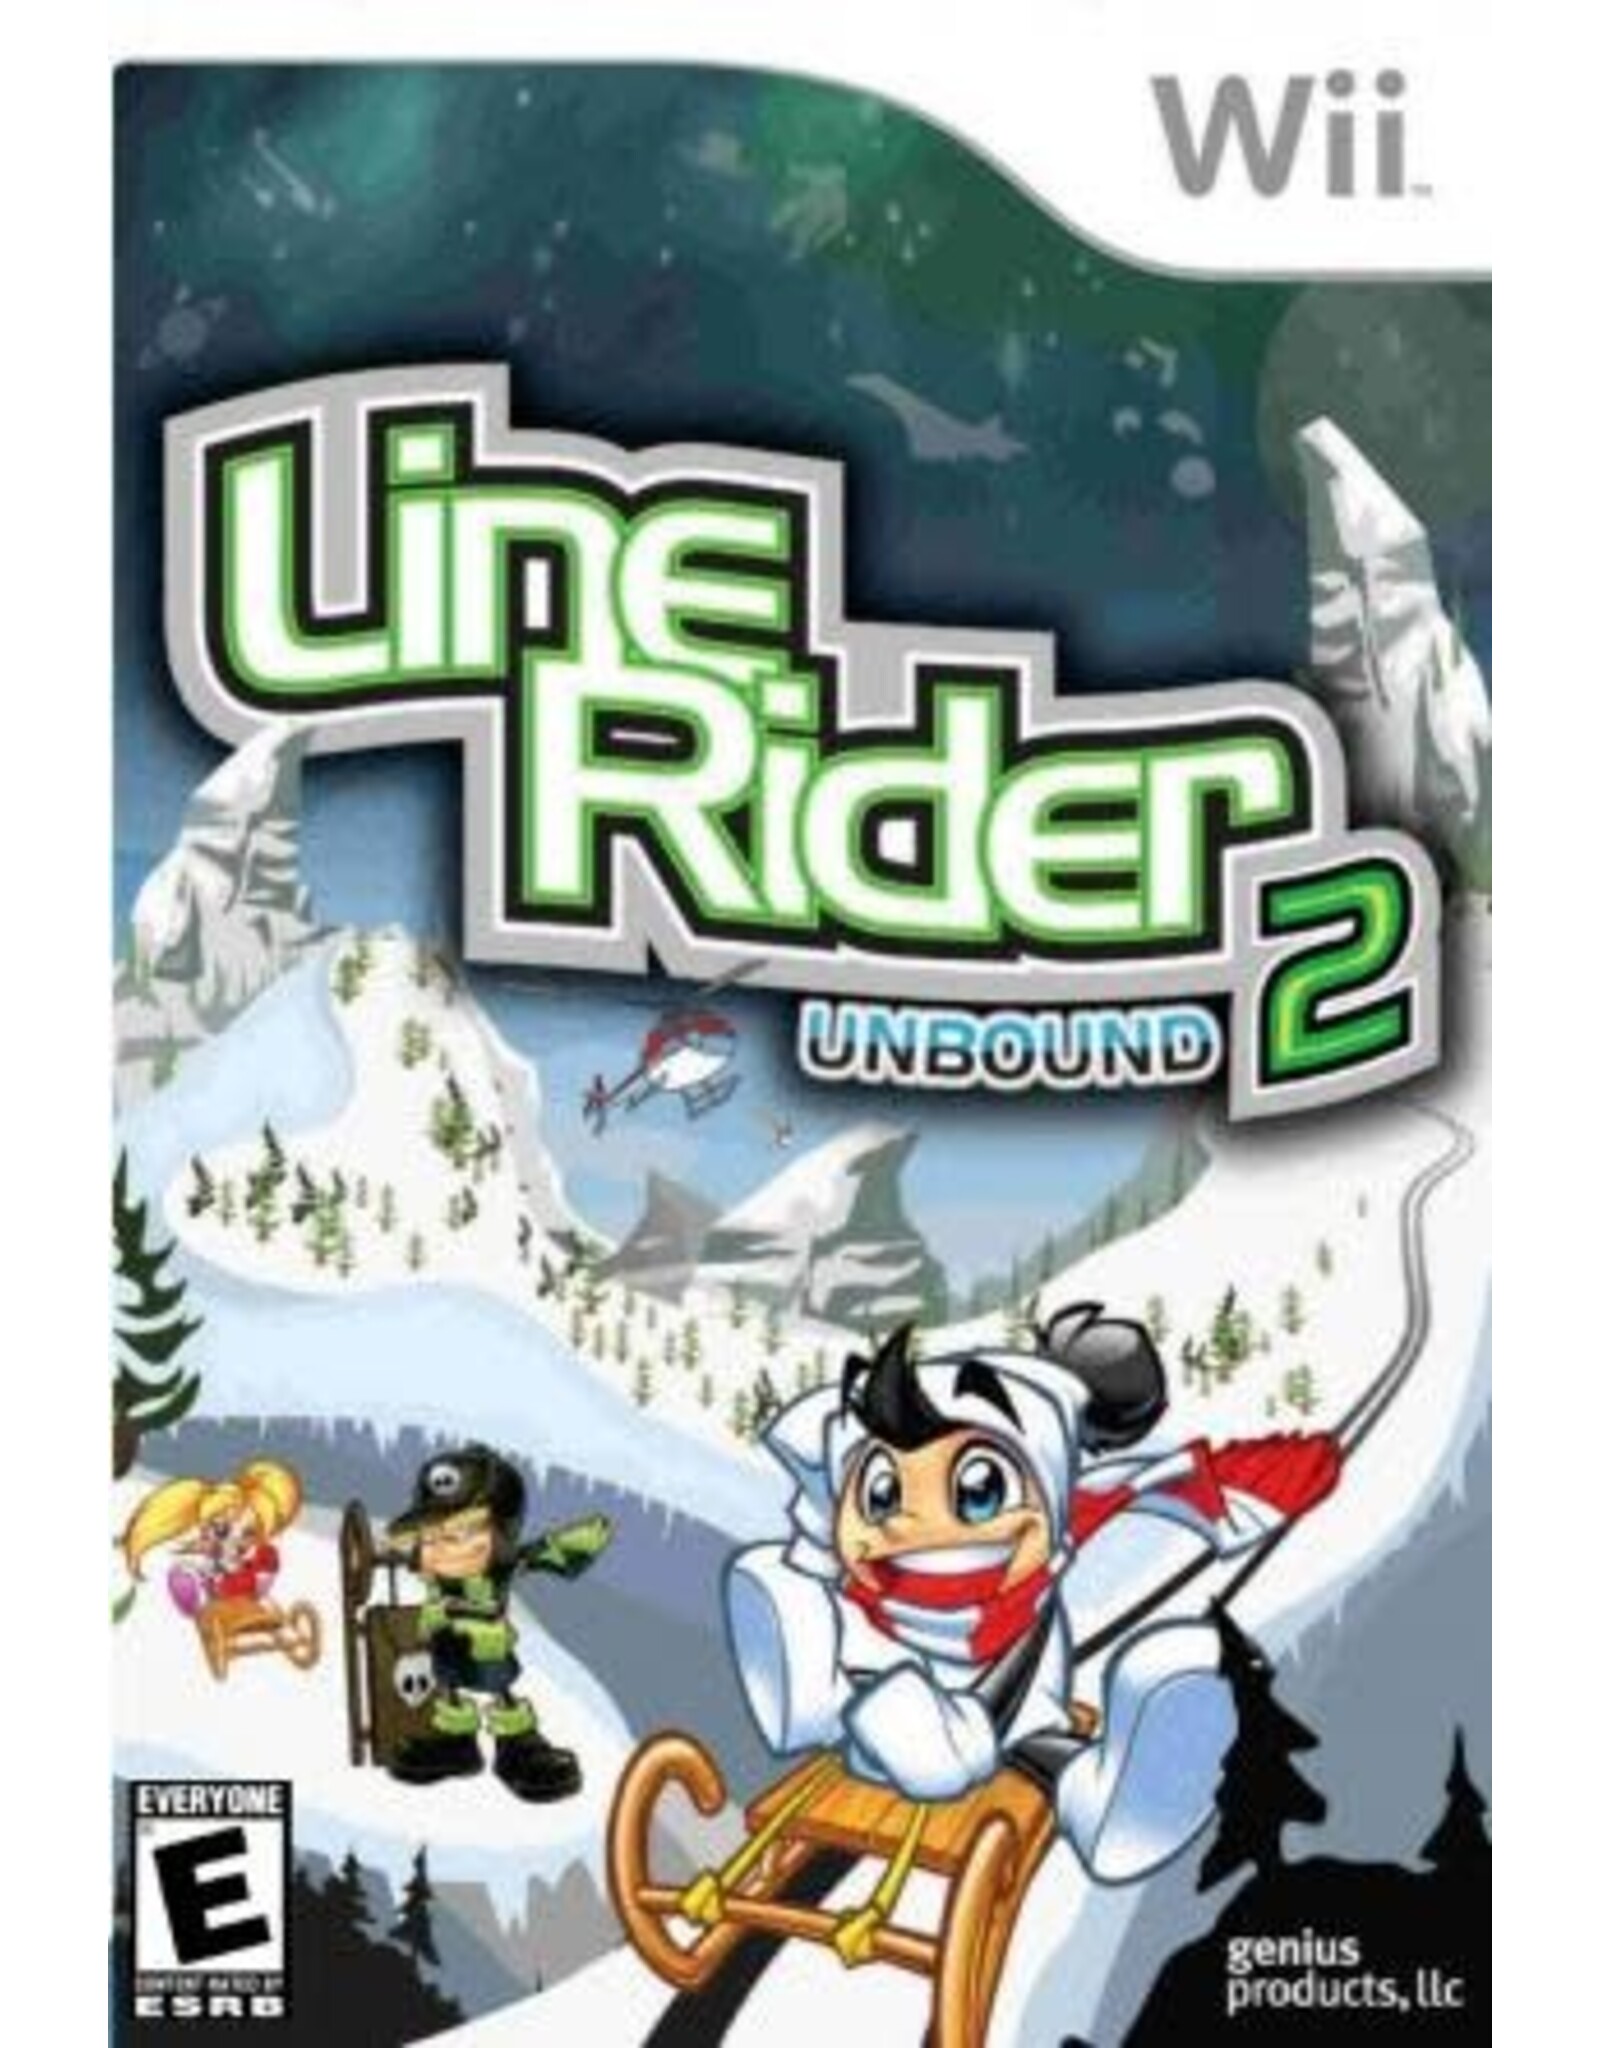 Wii Line Rider 2 Unbound (No Manual, Damaged Sleeve)